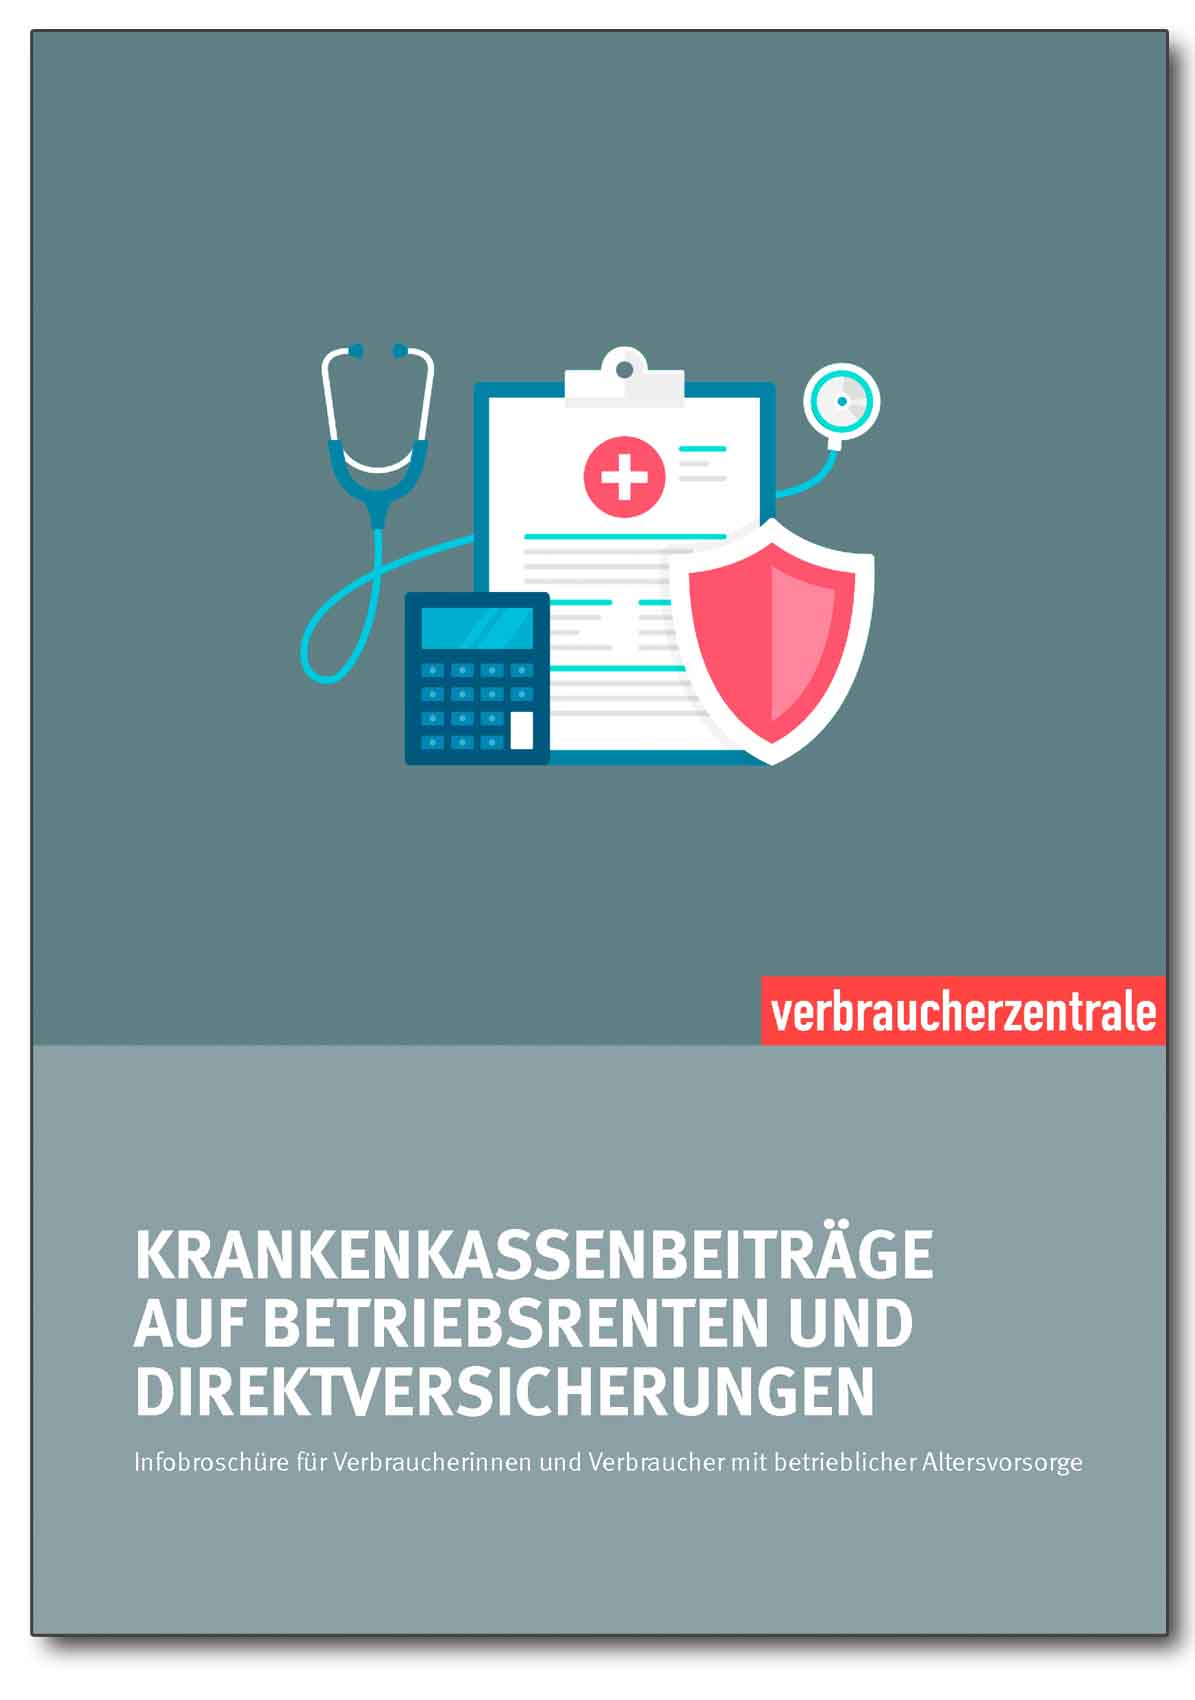 Infobroschüre - Krankenkassenbeiträge auf Betriebsrenten und Direktversicherungen